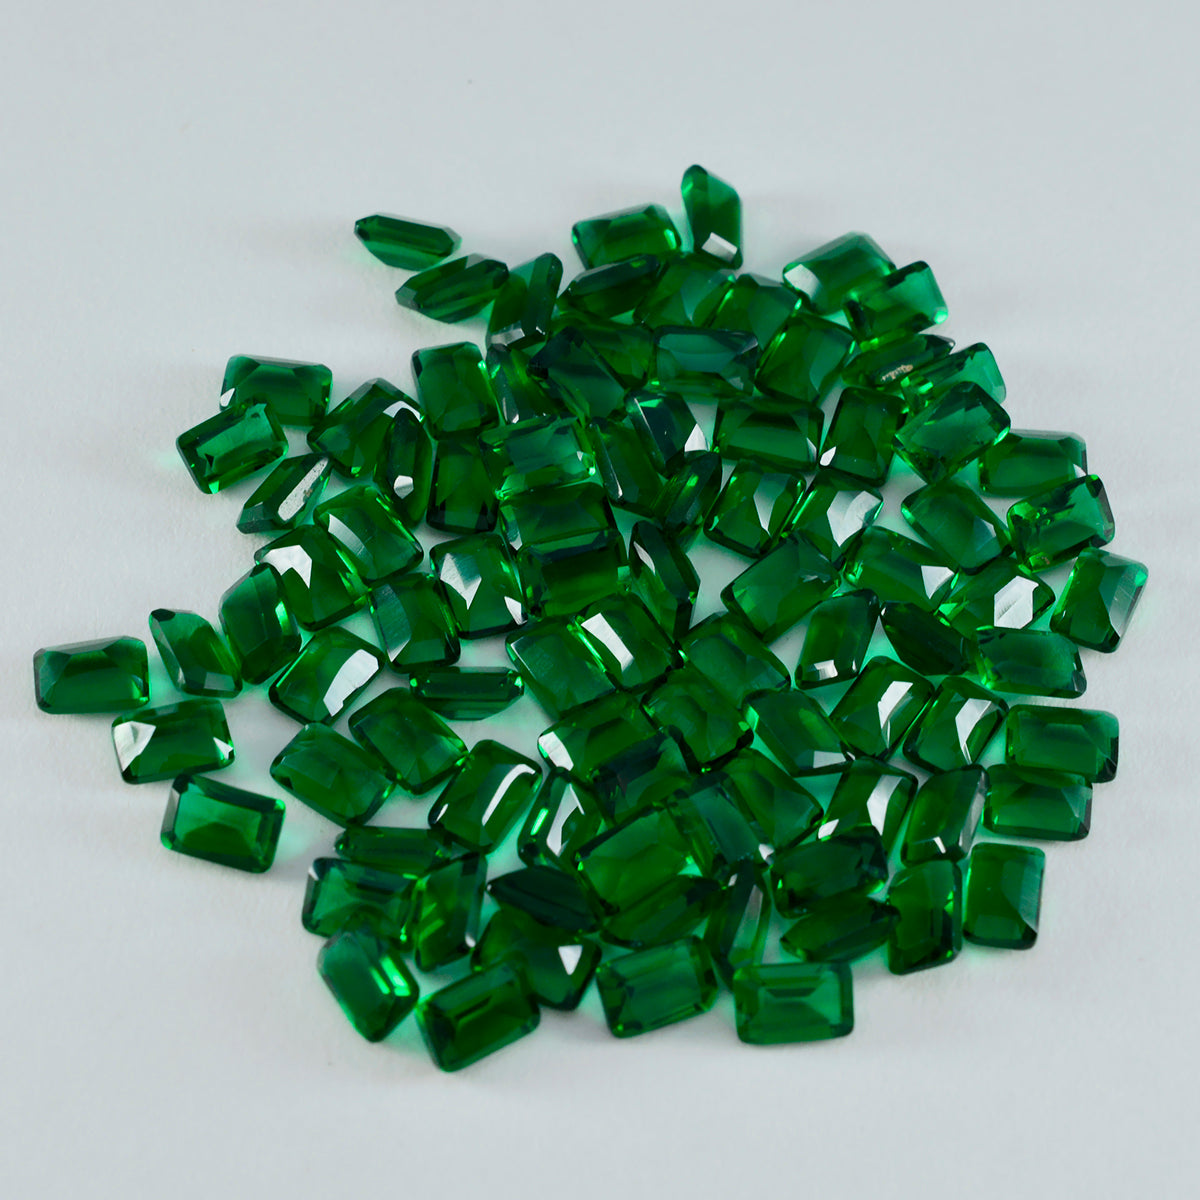 Riyogems 1 pièce émeraude verte cz à facettes 3x5mm forme octogonale a + 1 pierre précieuse en vrac de qualité